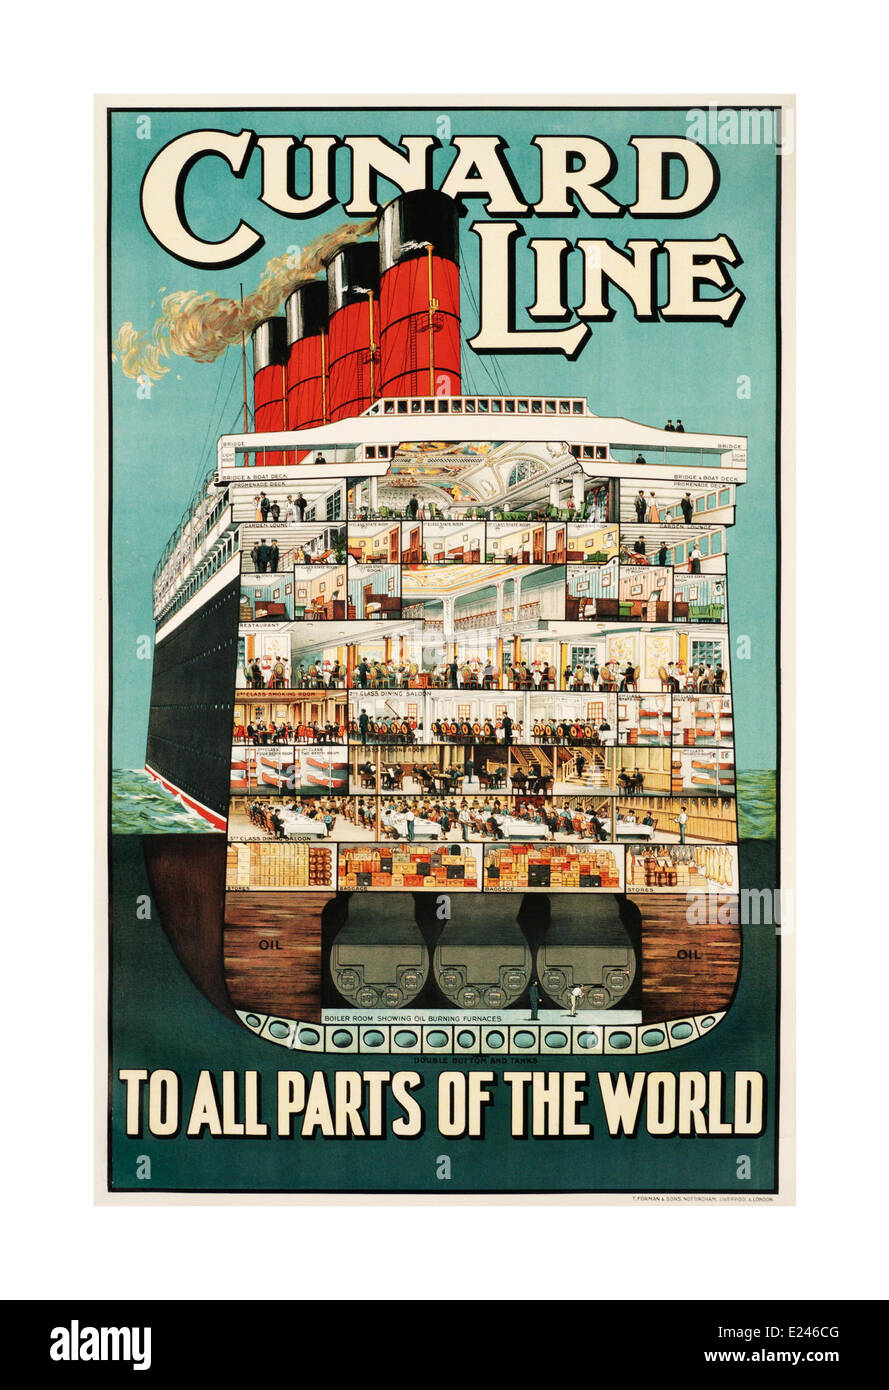 « Cunard LINE to all parties of the World », affiche du bateau de croisière d'époque des années 1930 pour Cunard Line montrant la coupe transversale interne d'un bateau de croisière de luxe Banque D'Images